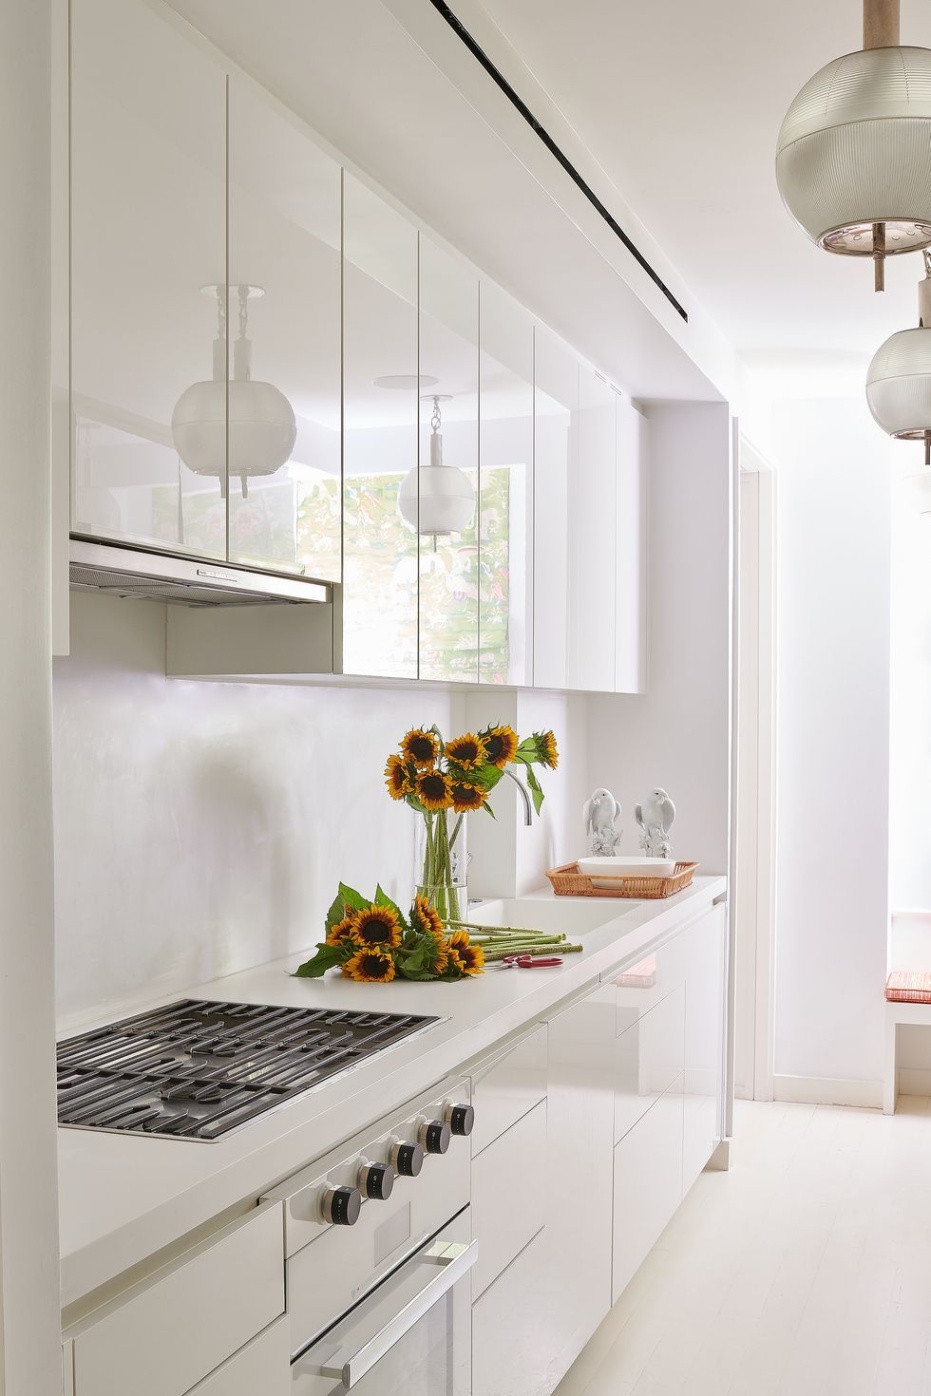 ideas kitchen design Niche Utama Home  Kitchen Design Ideas - Remodeling Ideas for Interior Design